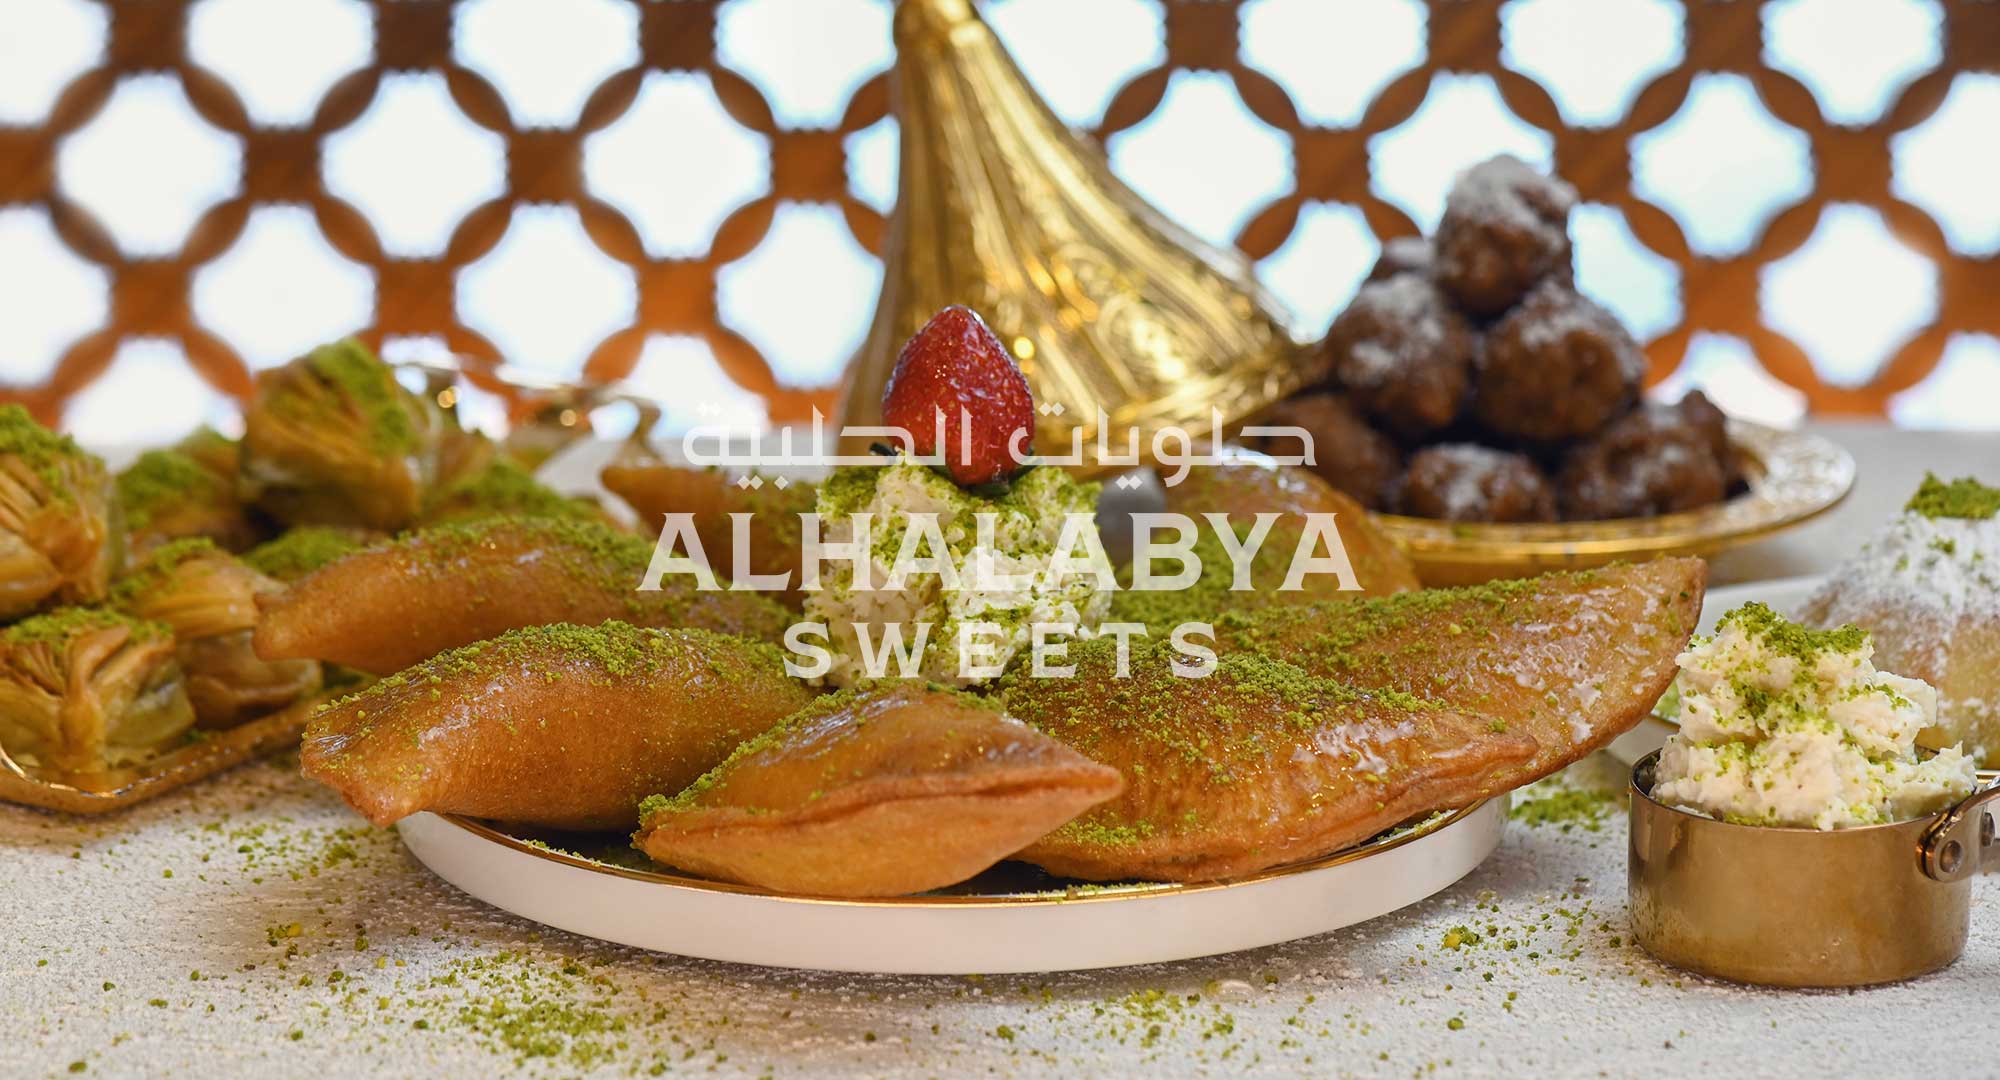 The Best Arabic Qatayef in the UAE